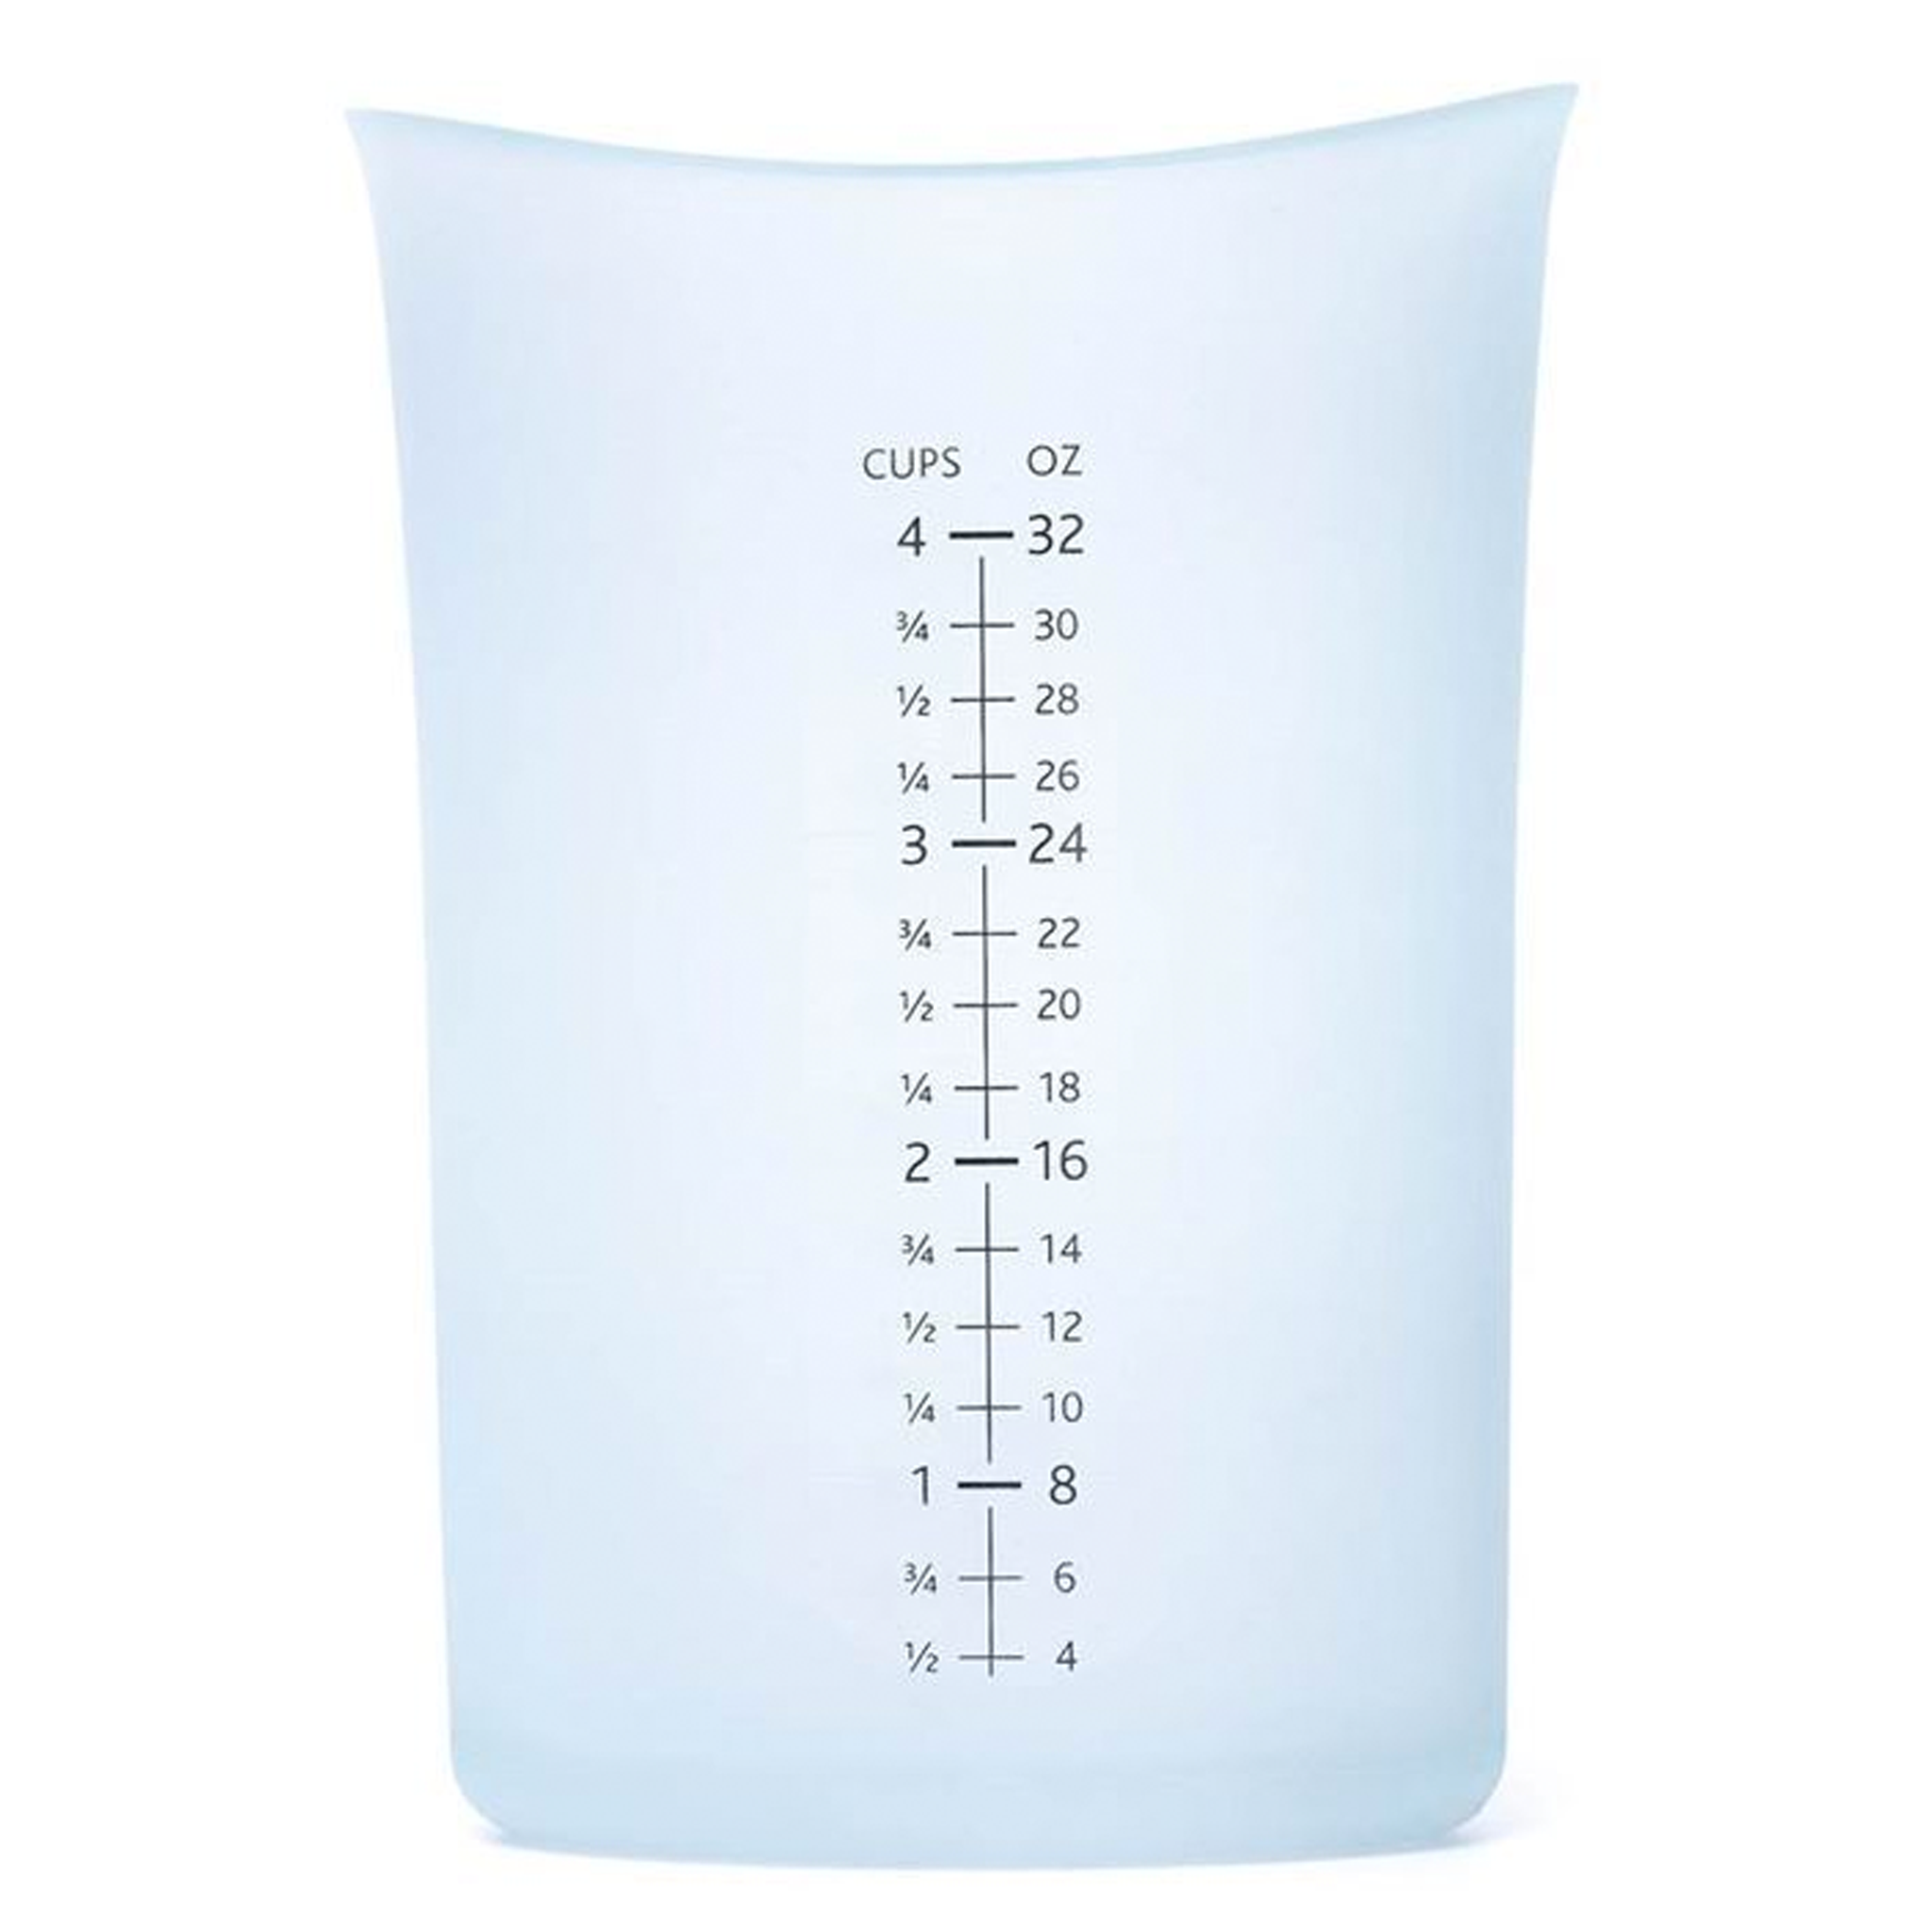 Liquid Measuring Cup - 4 Cup